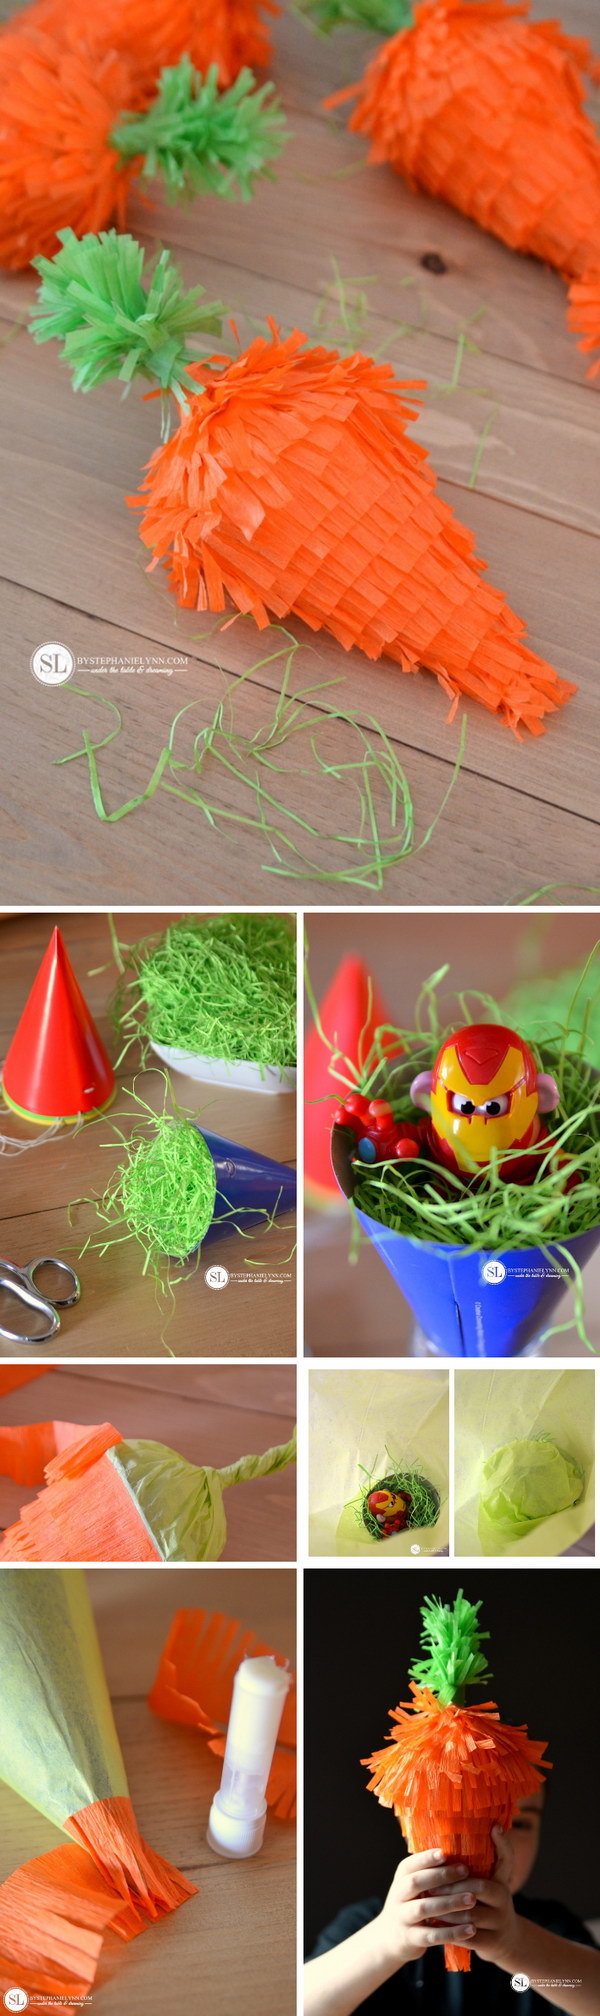 DIY Mini Easter Carrot Pinatas. 